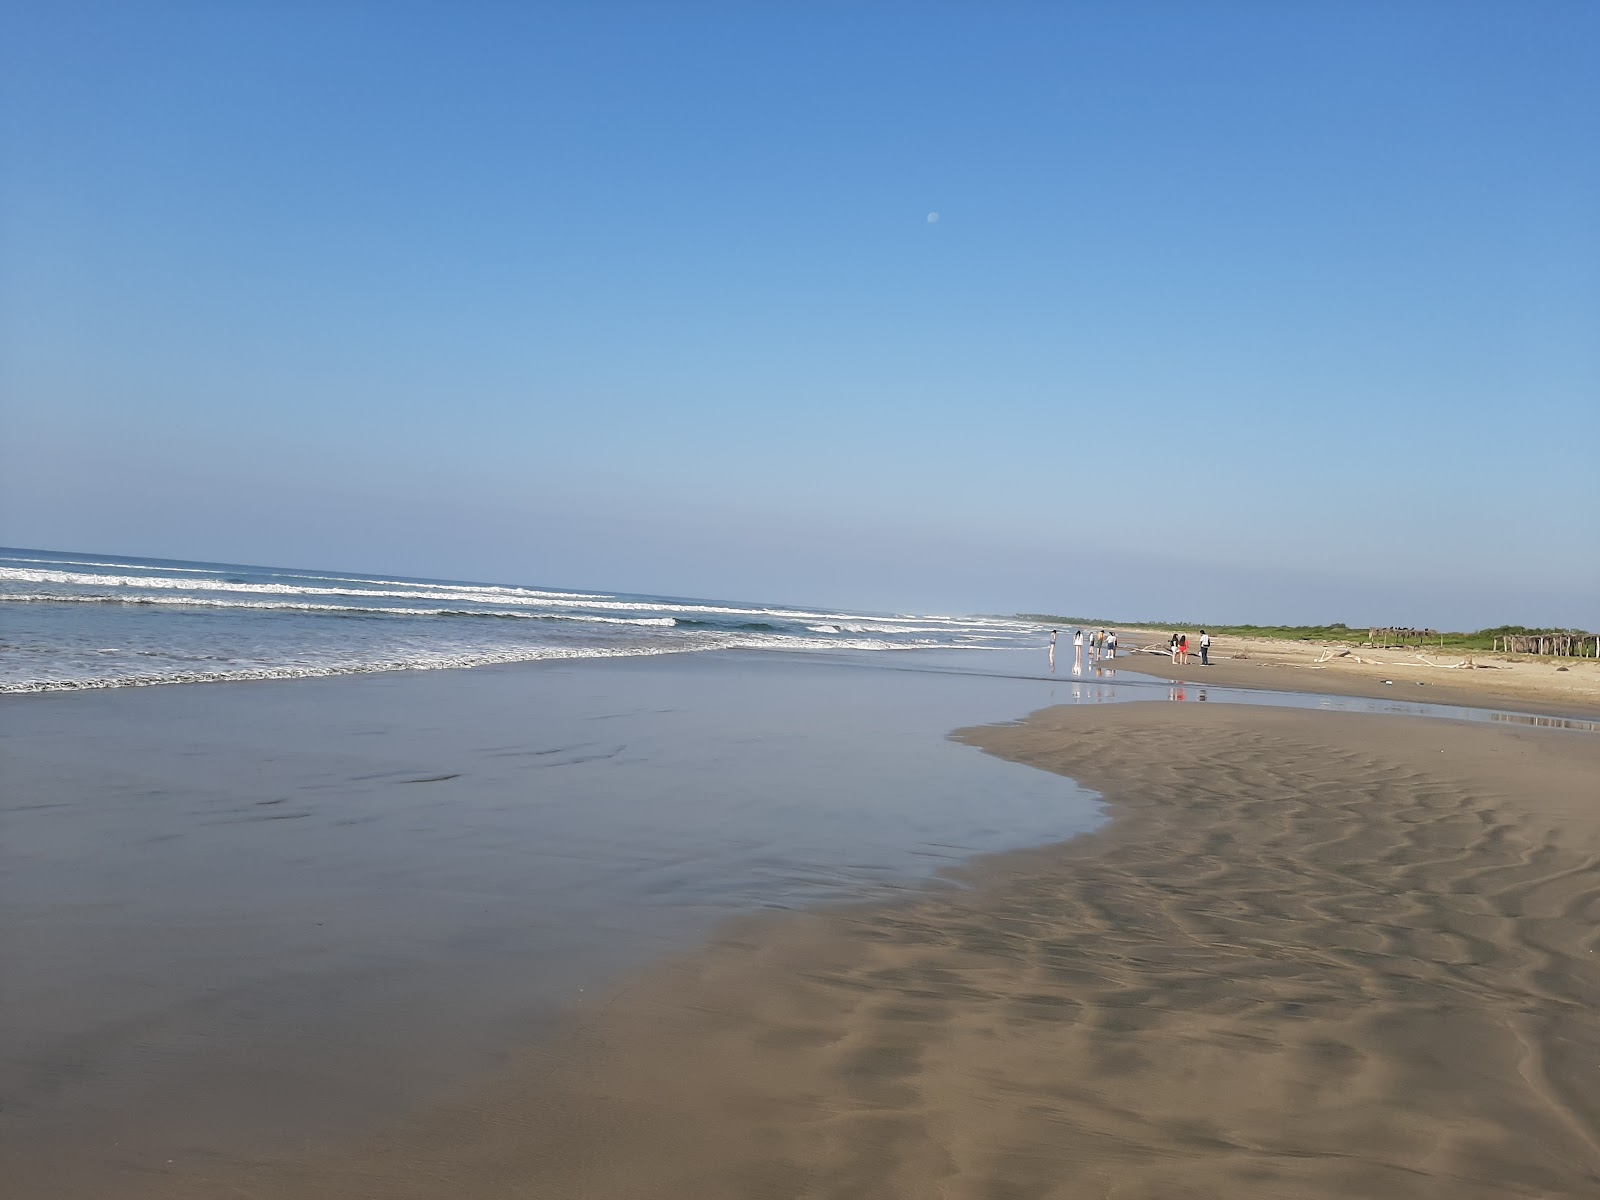 Fotografie cu Playa El Petatillo cu o suprafață de nisip maro fin